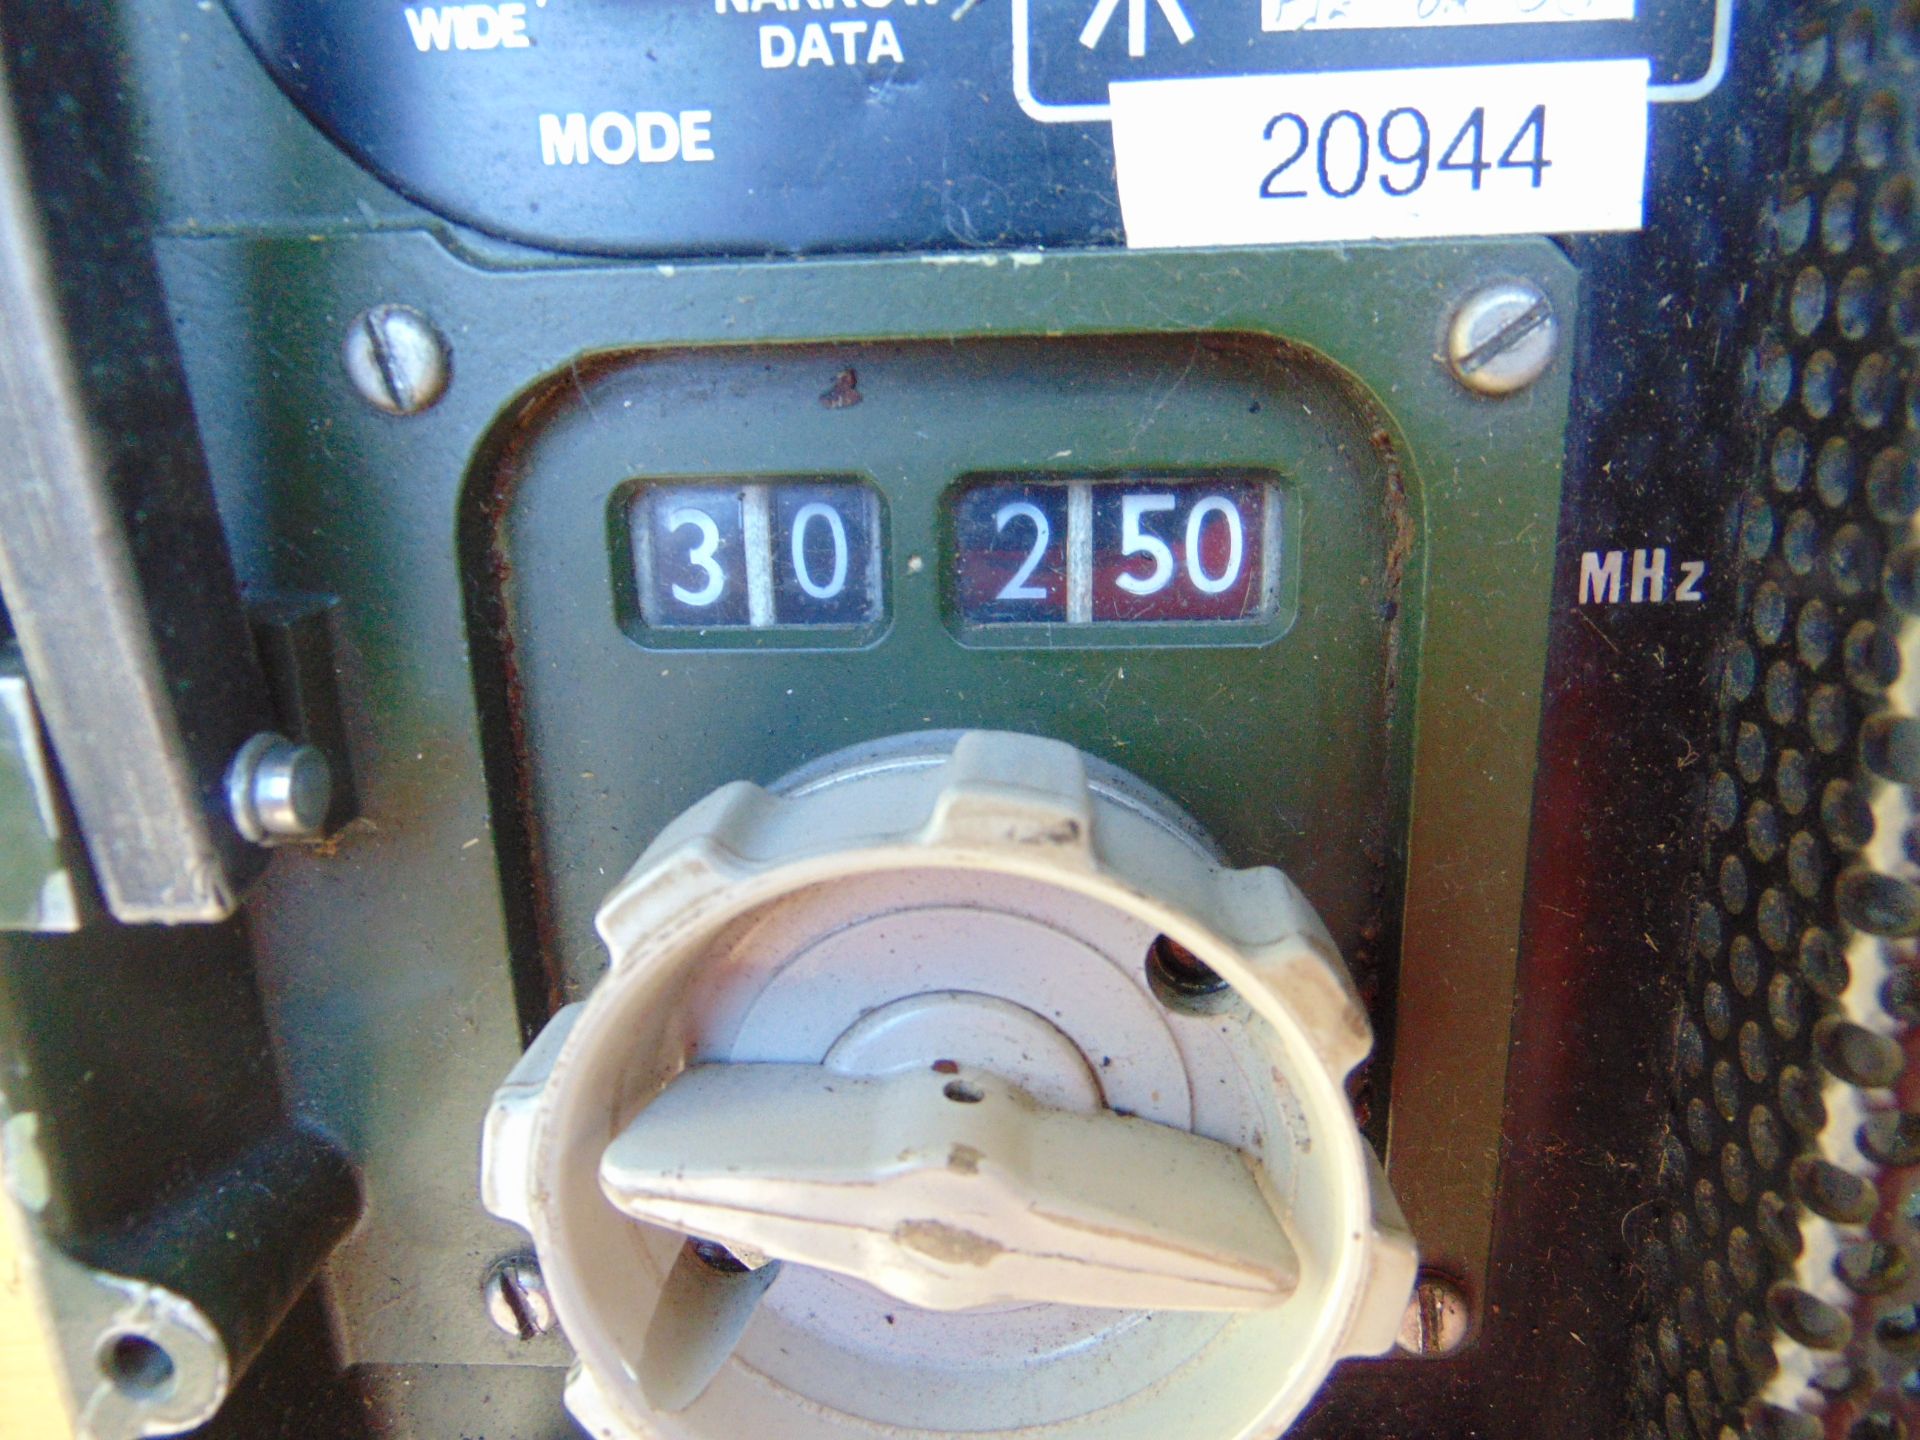 Clansman UK/RT 353 VHF Transmitter Receiver - Image 3 of 5